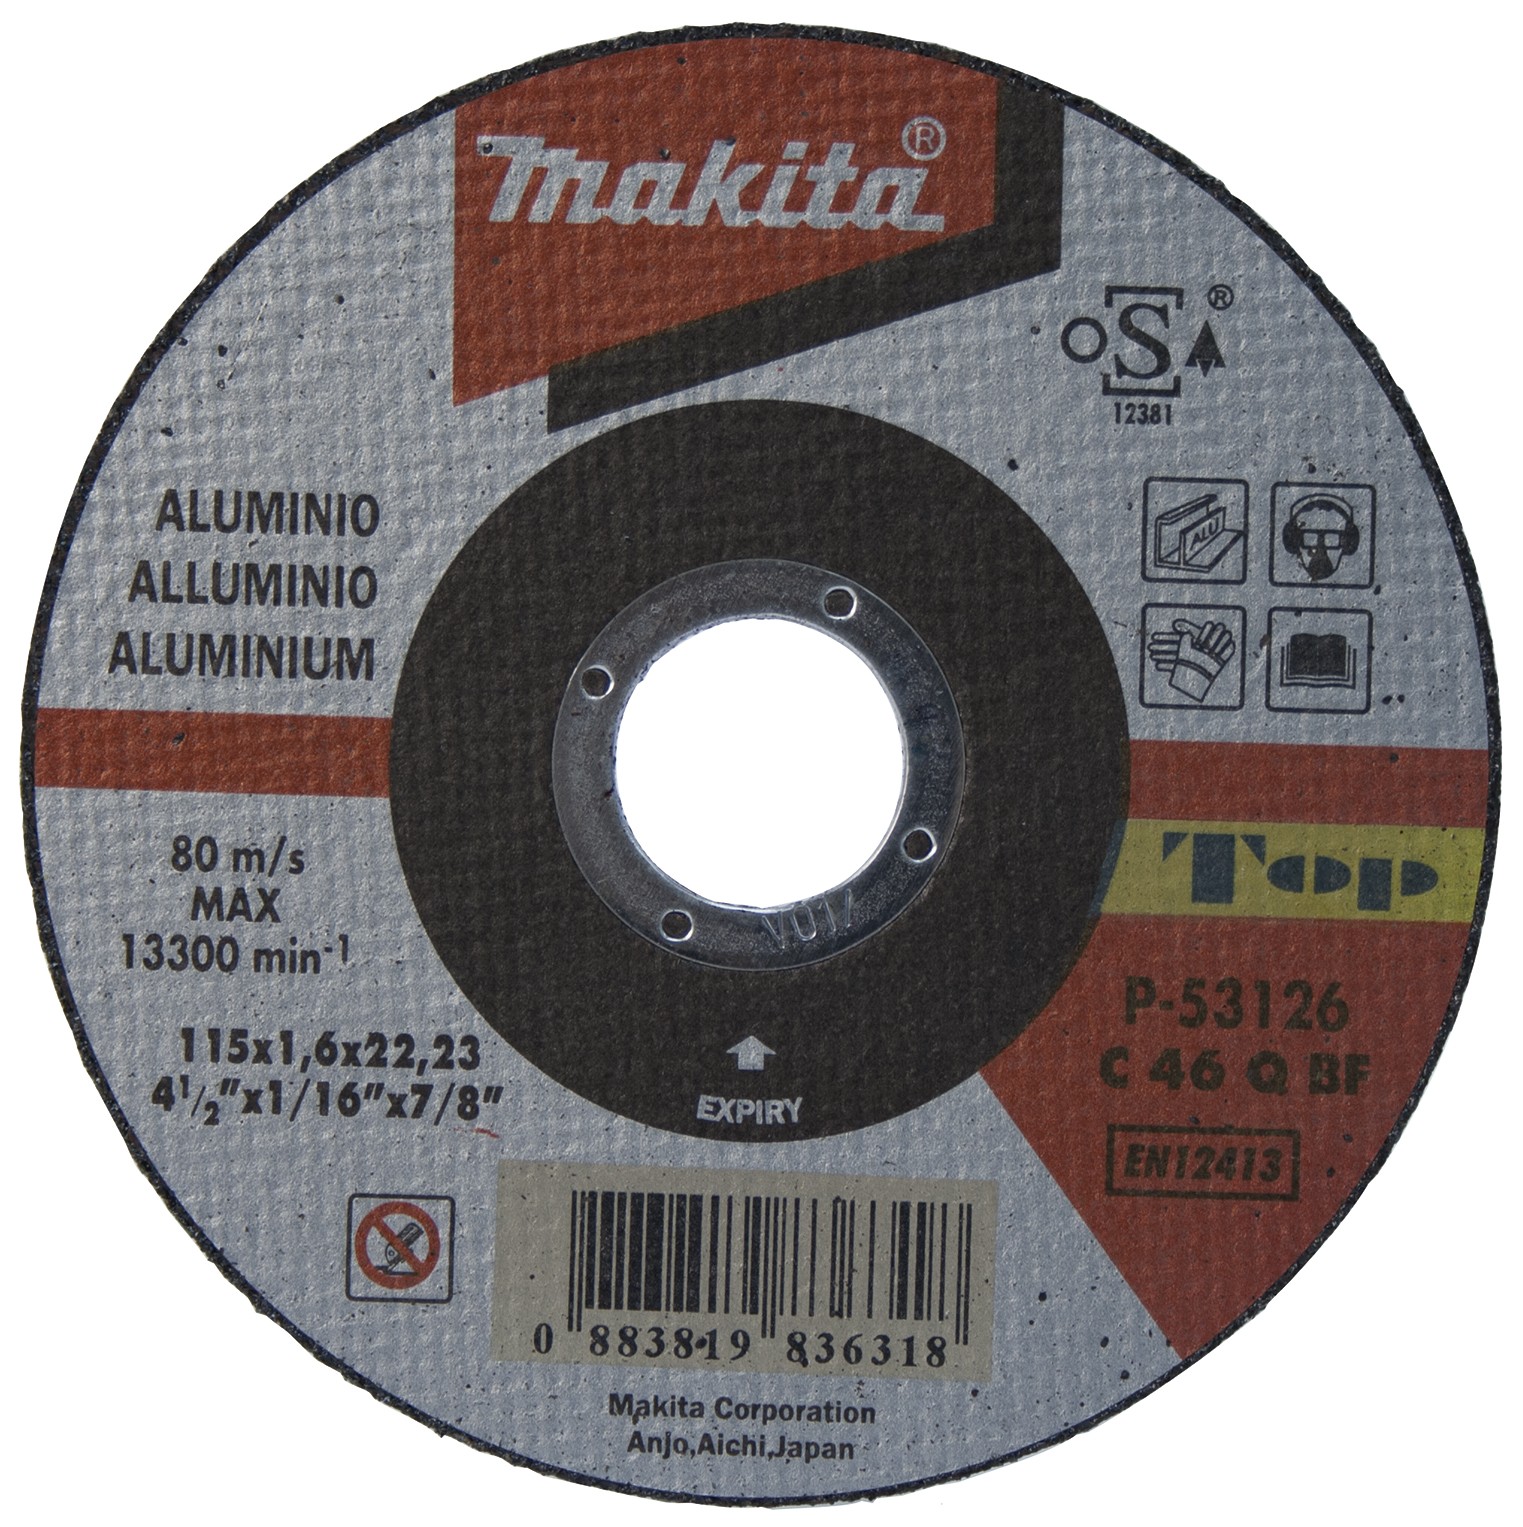 Makita P-53126 Disco de corte extrafino aluminio 115mm MAK-P-53126 | DISCOS DE CORTE